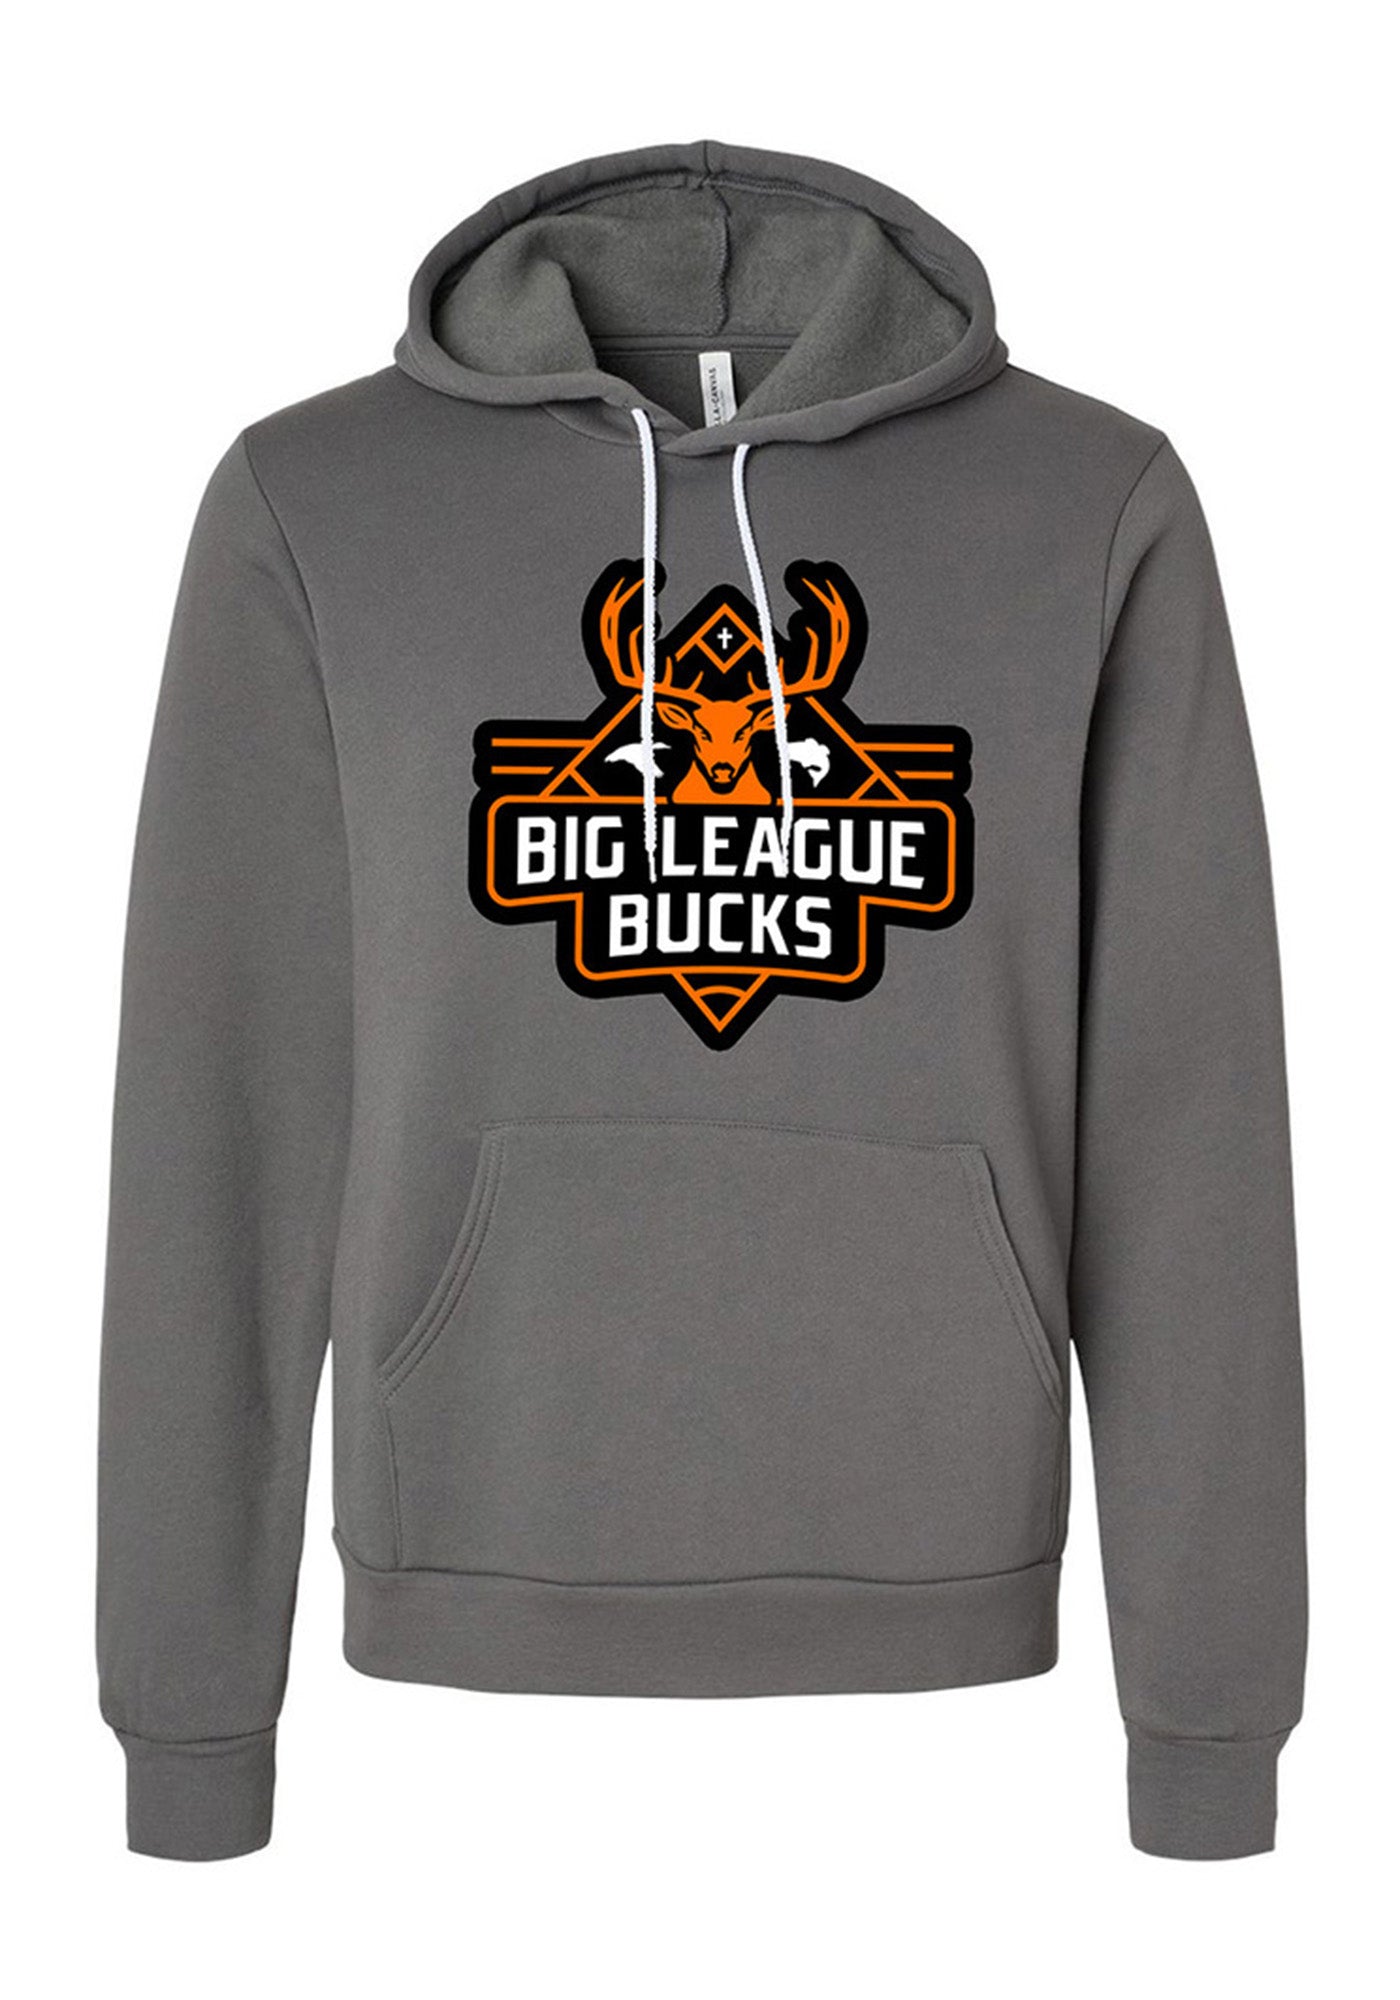 Big League Bucks Black and Orange Grey Hoodie